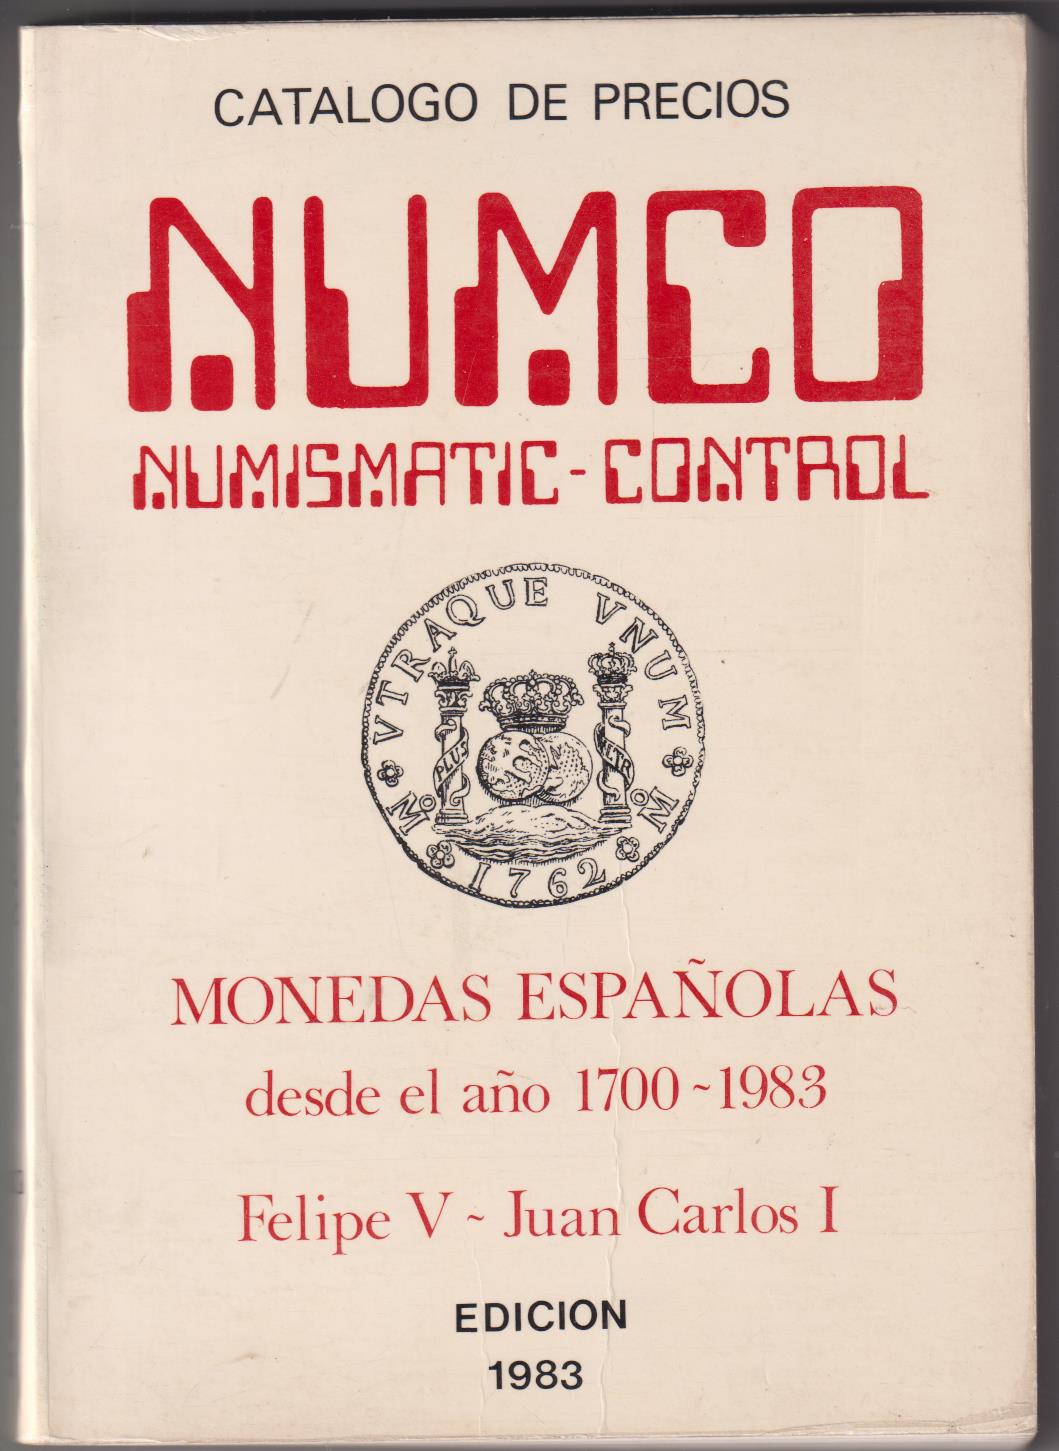 Catálogo de Precios Numco. Numismatic-Control. Monedas Españolas desde 1700 a 1982